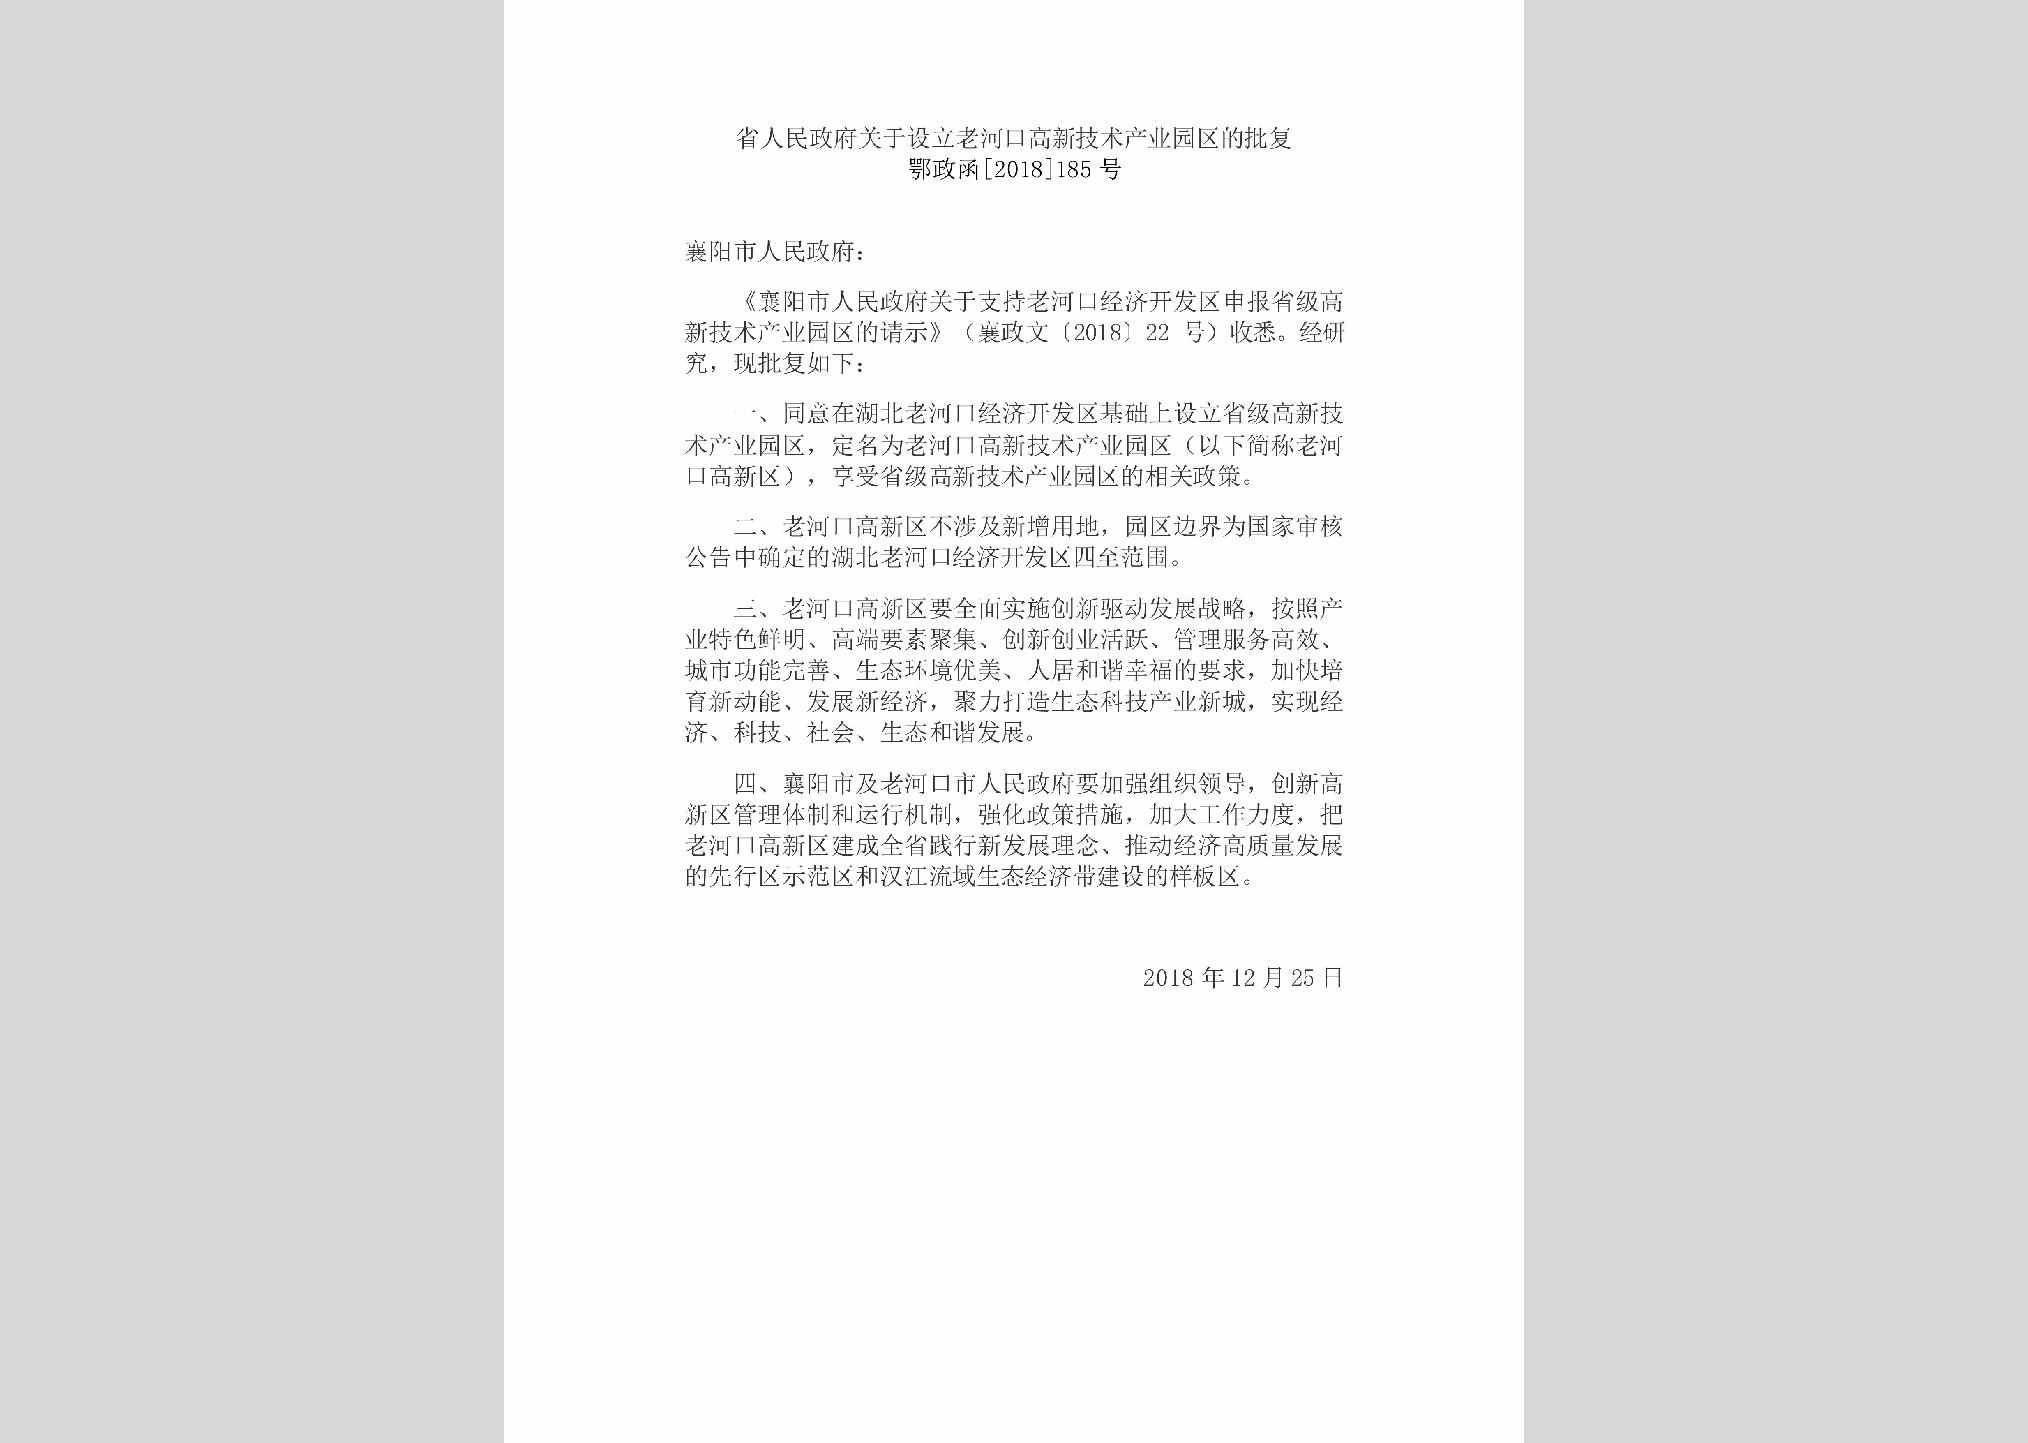 鄂政函[2018]185号：省人民政府关于设立老河口高新技术产业园区的批复